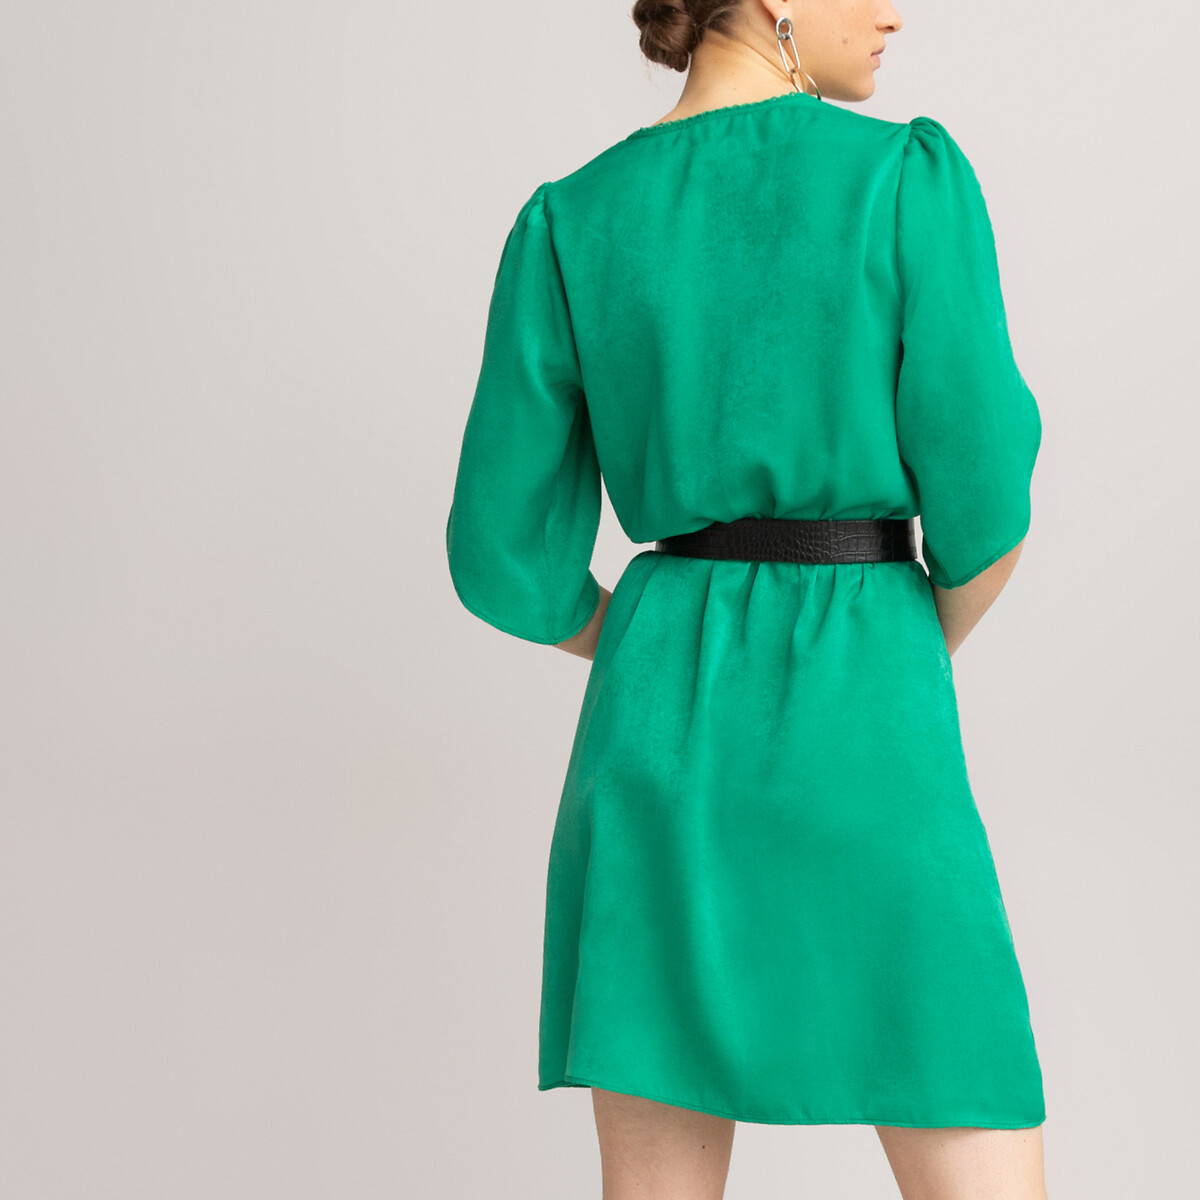 Платье LaRedoute Короткое с запахом короткие рукава 48 (FR) - 54 (RUS) зеленый, размер 48 (FR) - 54 (RUS) Короткое с запахом короткие рукава 48 (FR) - 54 (RUS) зеленый - фото 4